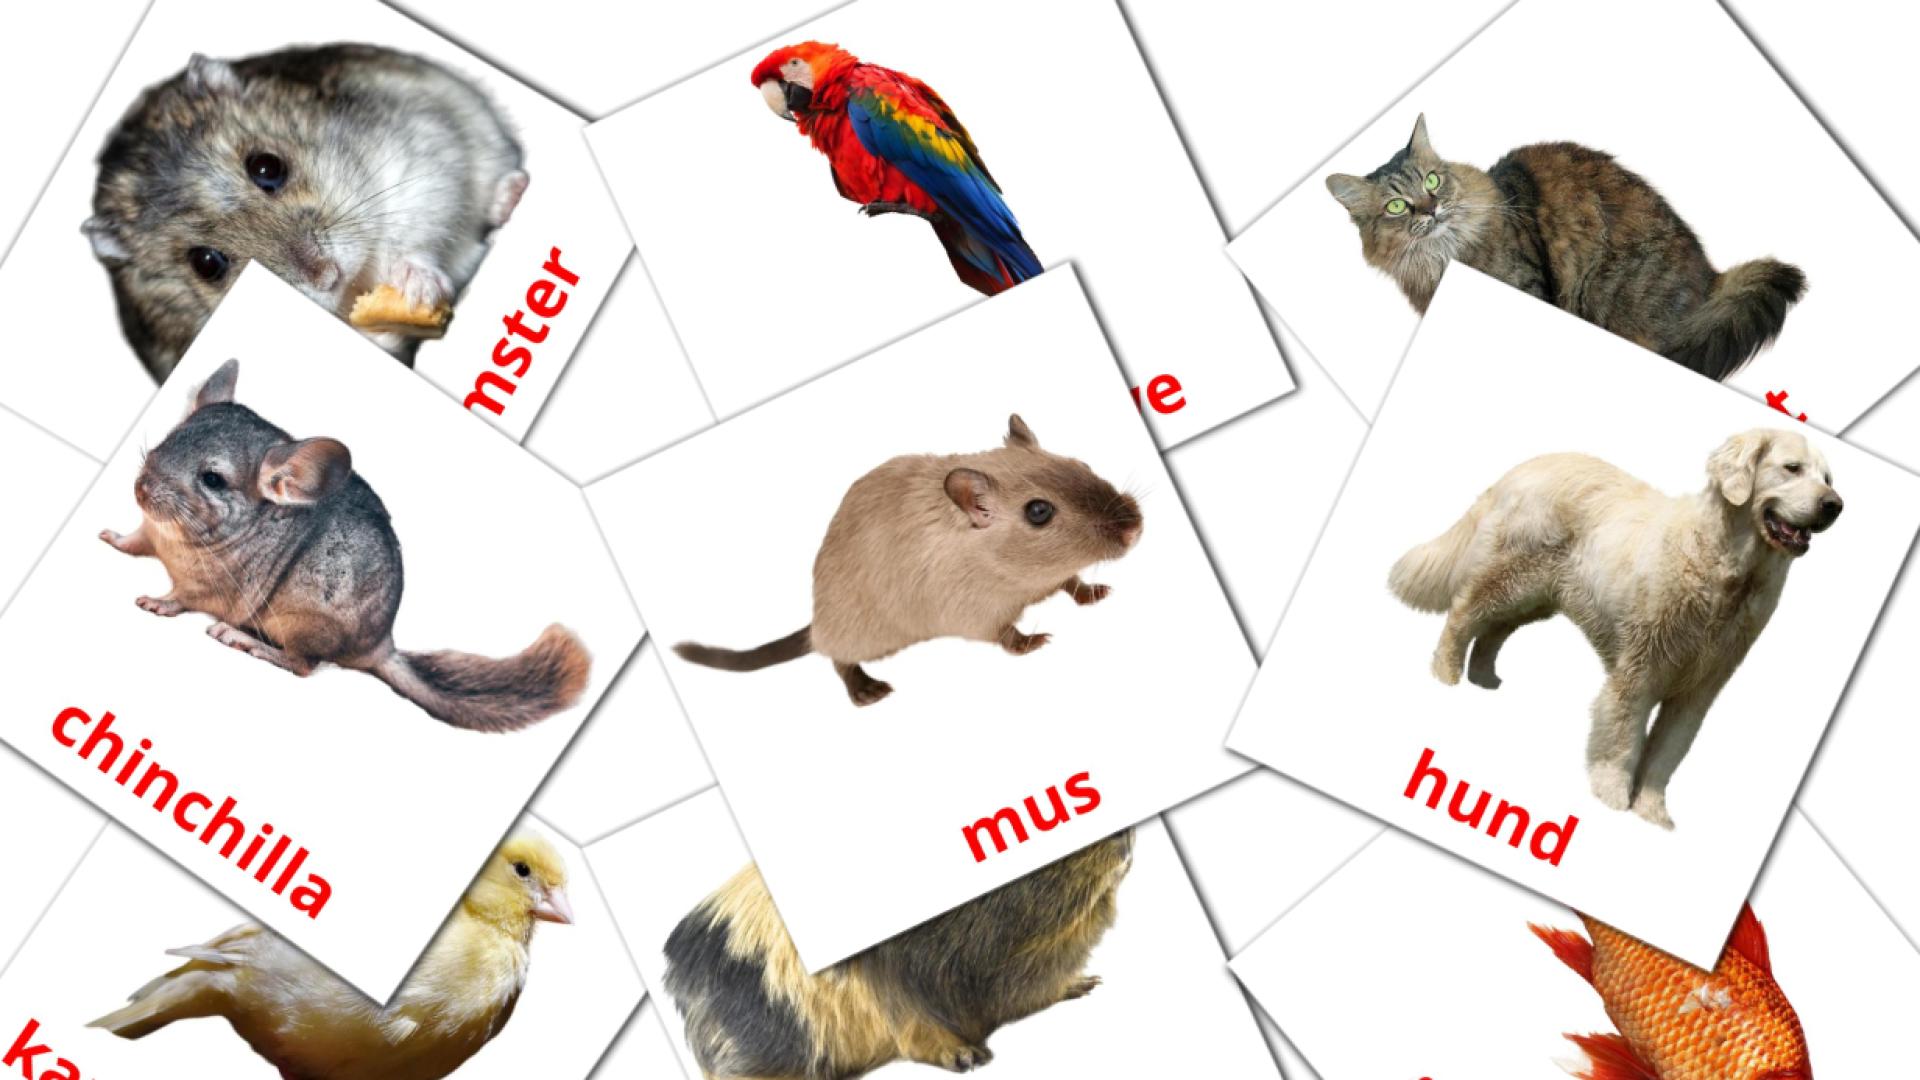 10 Husdyr flashcards